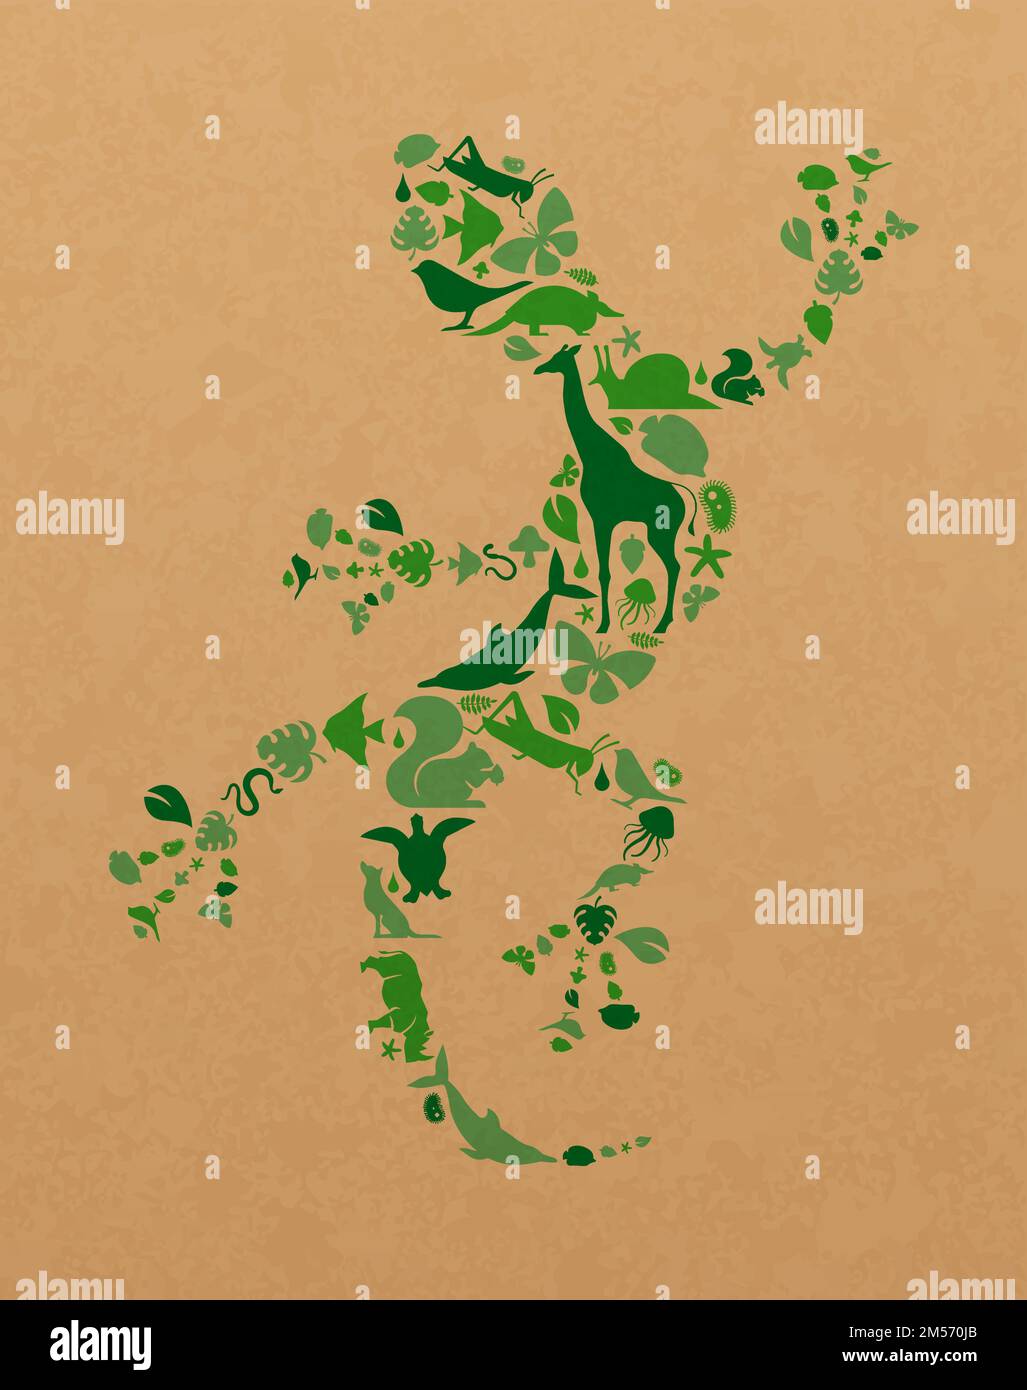 Forme icone animali verdi Imposta l'illustrazione sulla trama della carta riciclata. Diversi animali selvatici silhouette forma lucertola per un concetto o un ambiente eco-friendly Illustrazione Vettoriale